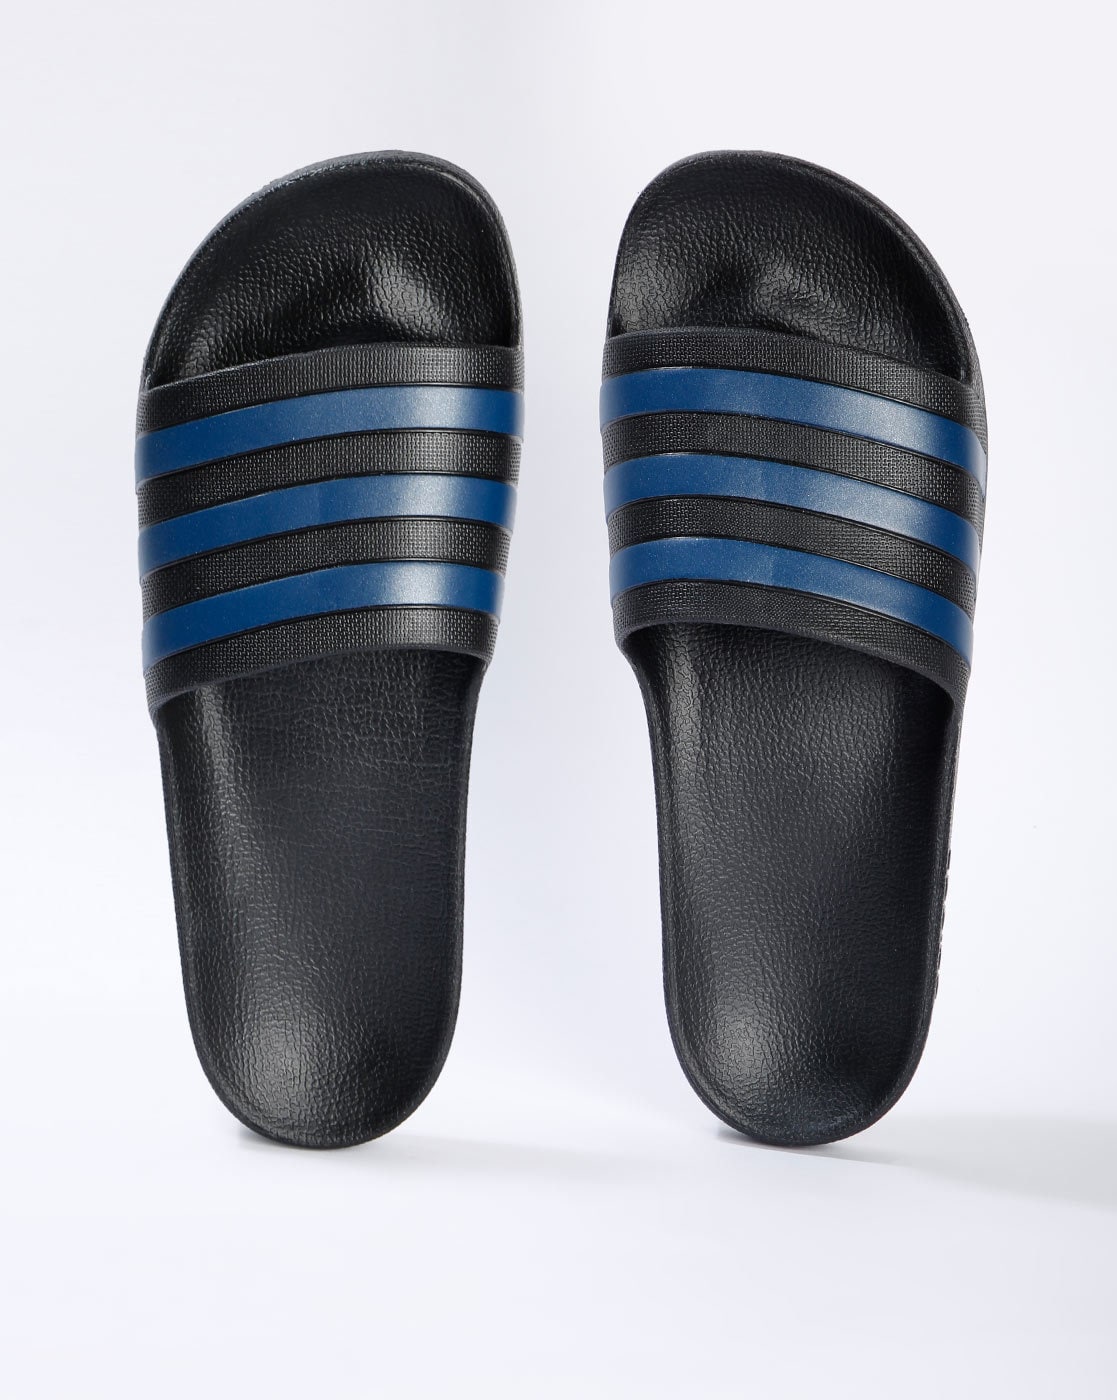 adidas black slide flip flop